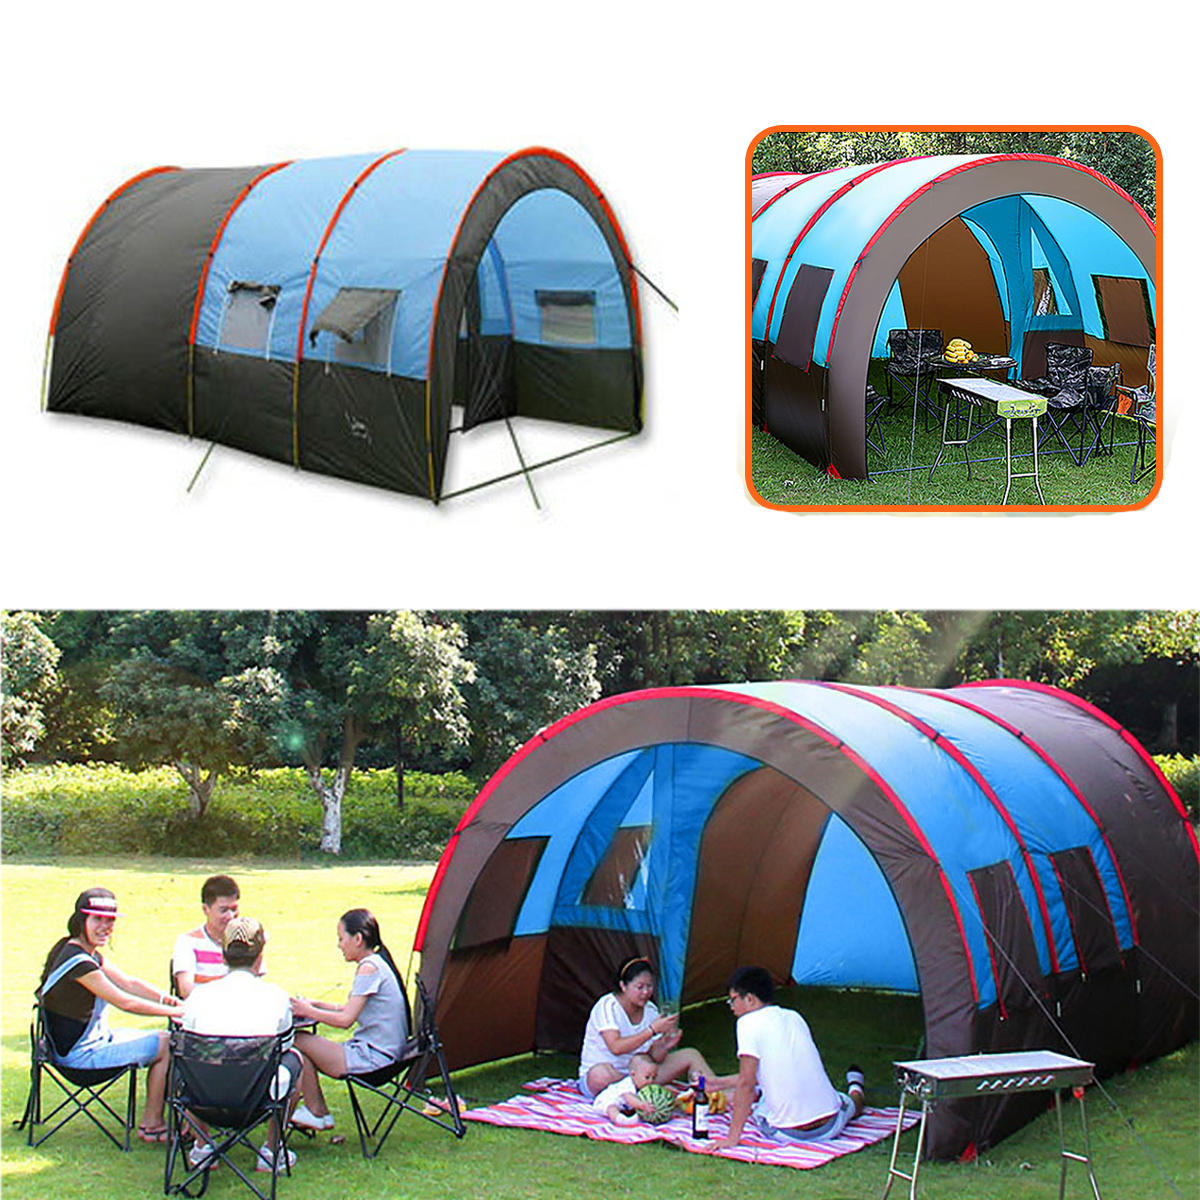 Tente de camping extérieure pour 8-10 personnes, imperméable à double couche, grande tente familiale avec auvent pare-soleil.